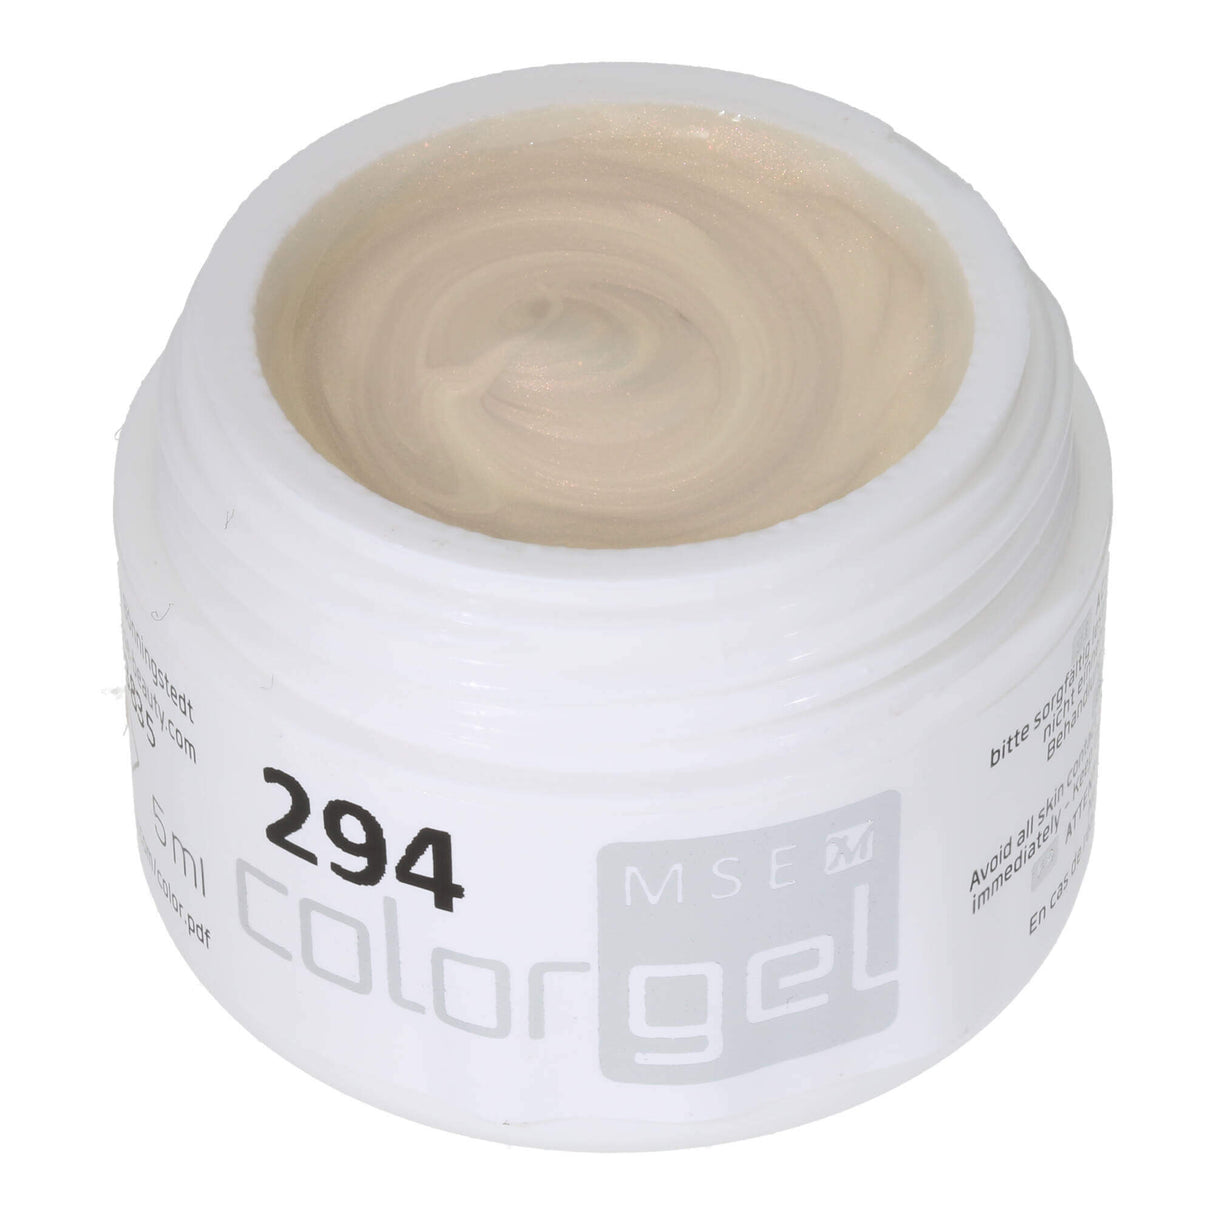 # 294 Premium EFFECT Color Gel 5ml màu trắng với ánh đồng